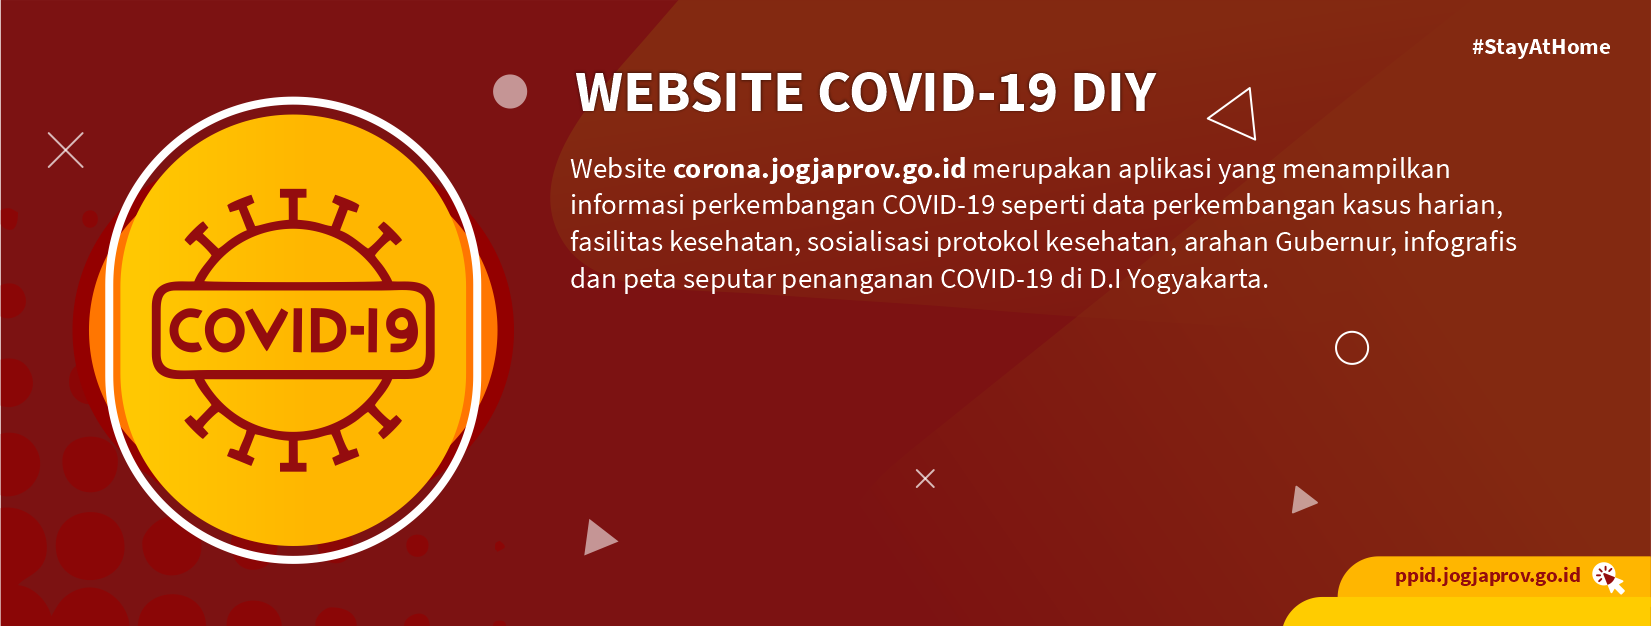 Website Covid-19 DIY